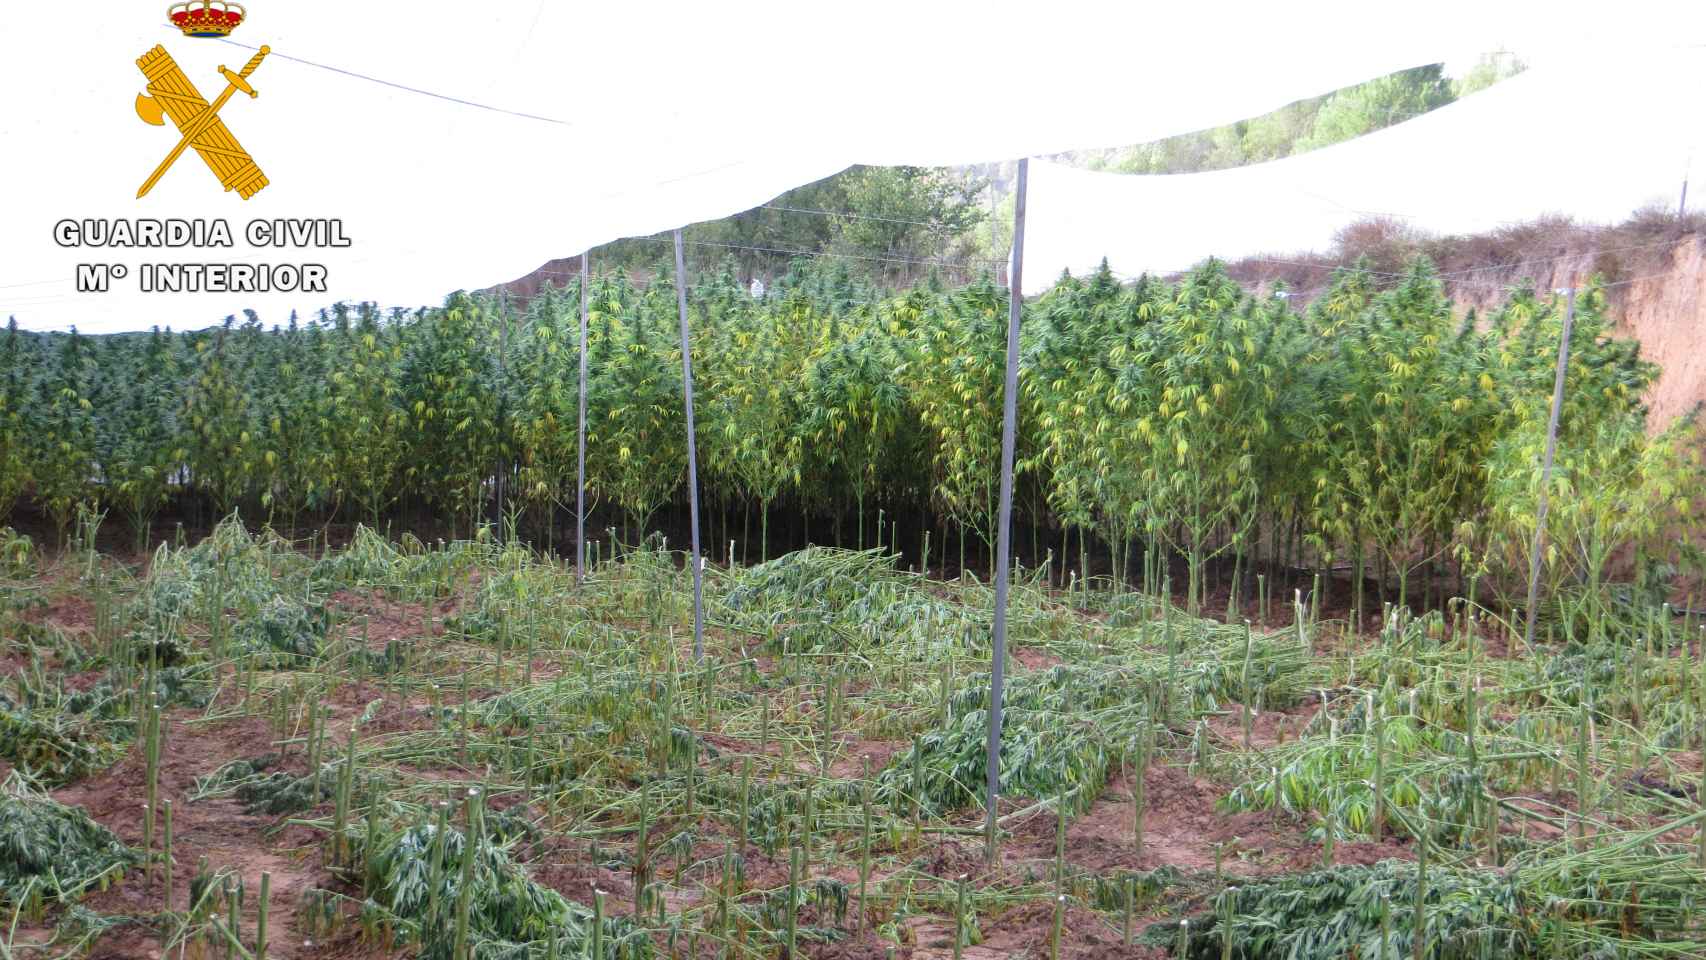 Las plantas de marihuana estaban cubiertas por plásticos.